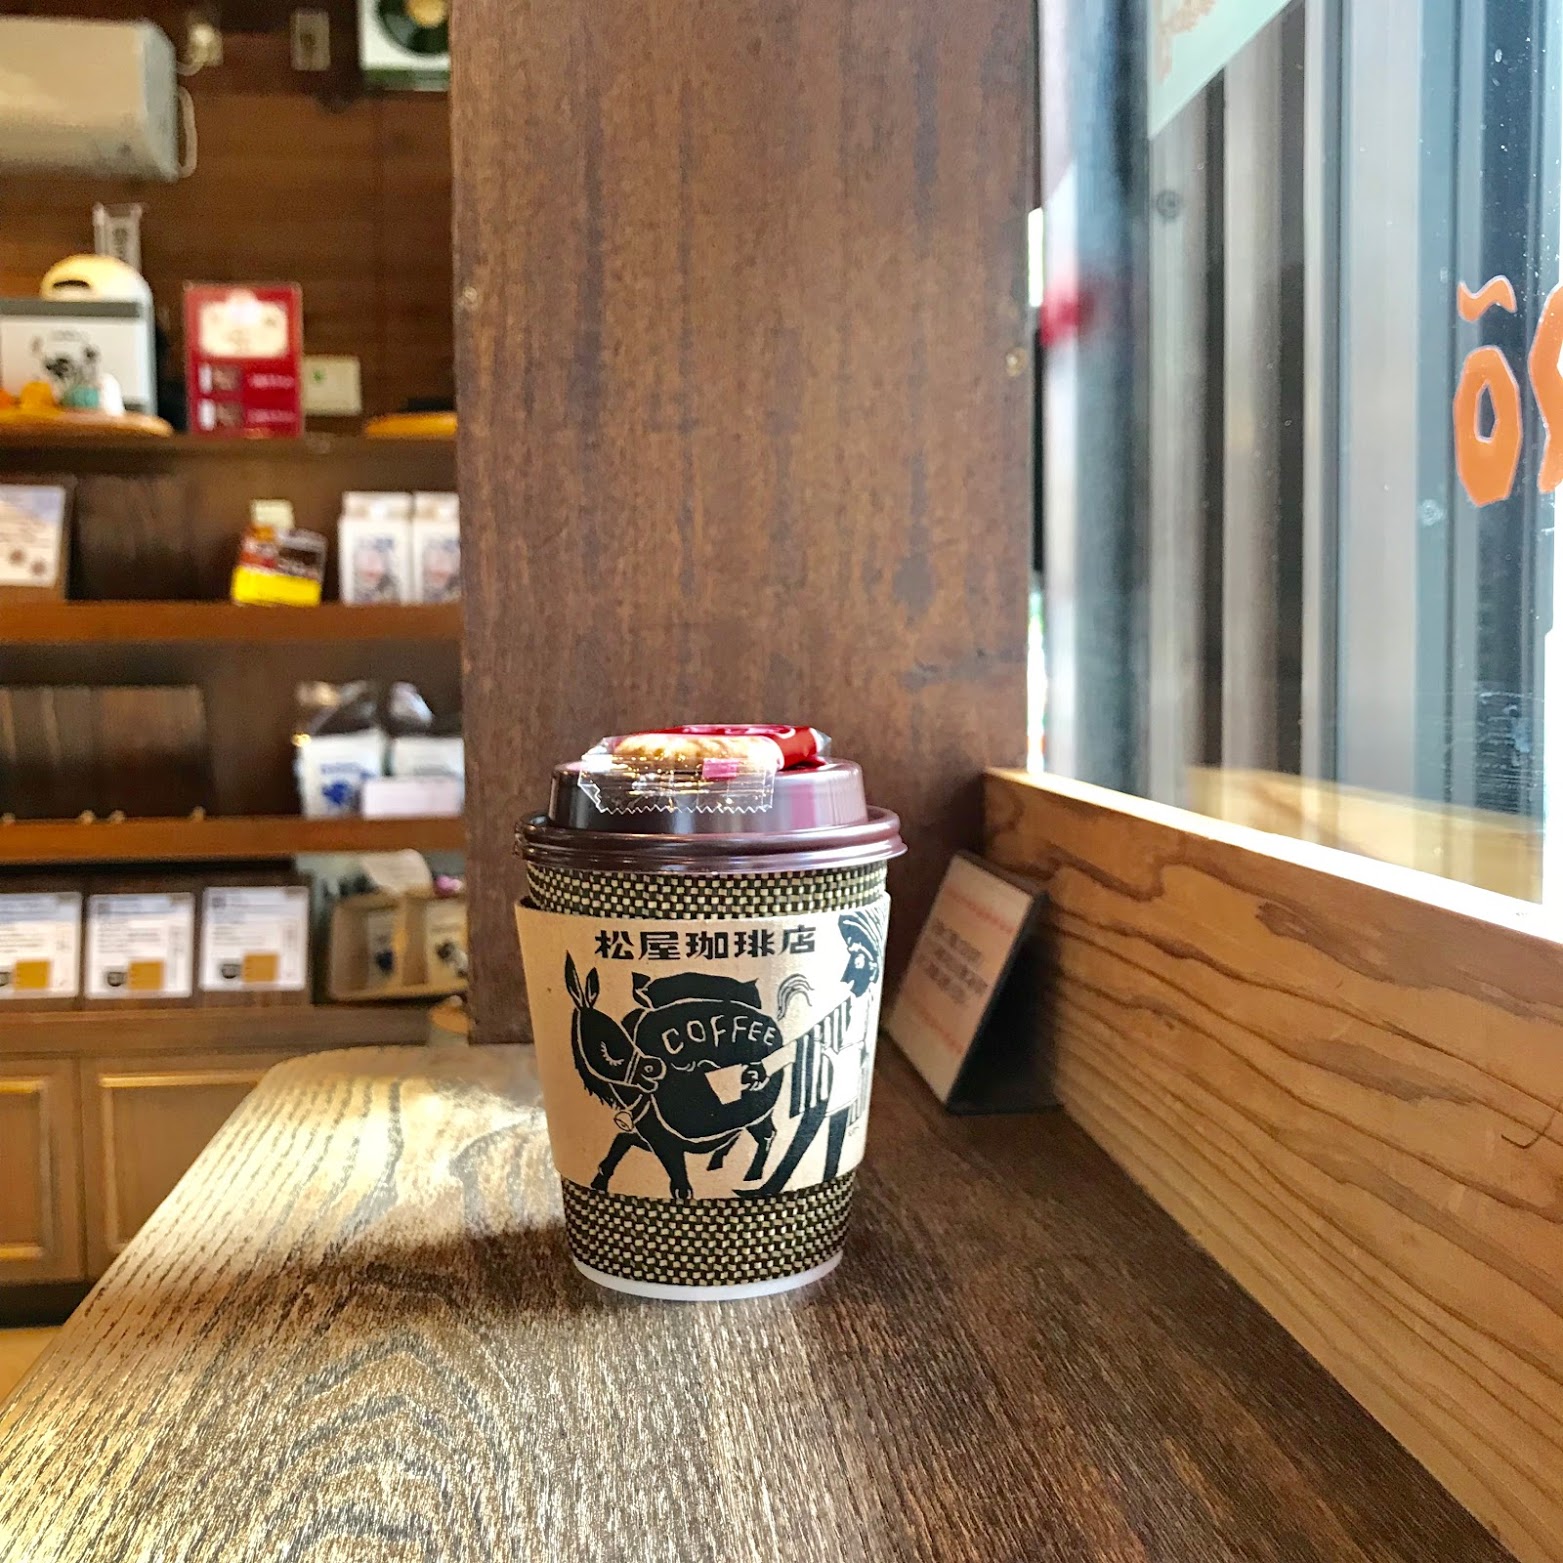 コーヒーが好きなら必ず行って欲しい、大正7年創業の松屋珈琲店。Tokyo Coffee Guide 2020 | Entry No.43 松屋珈琲店（神谷町）